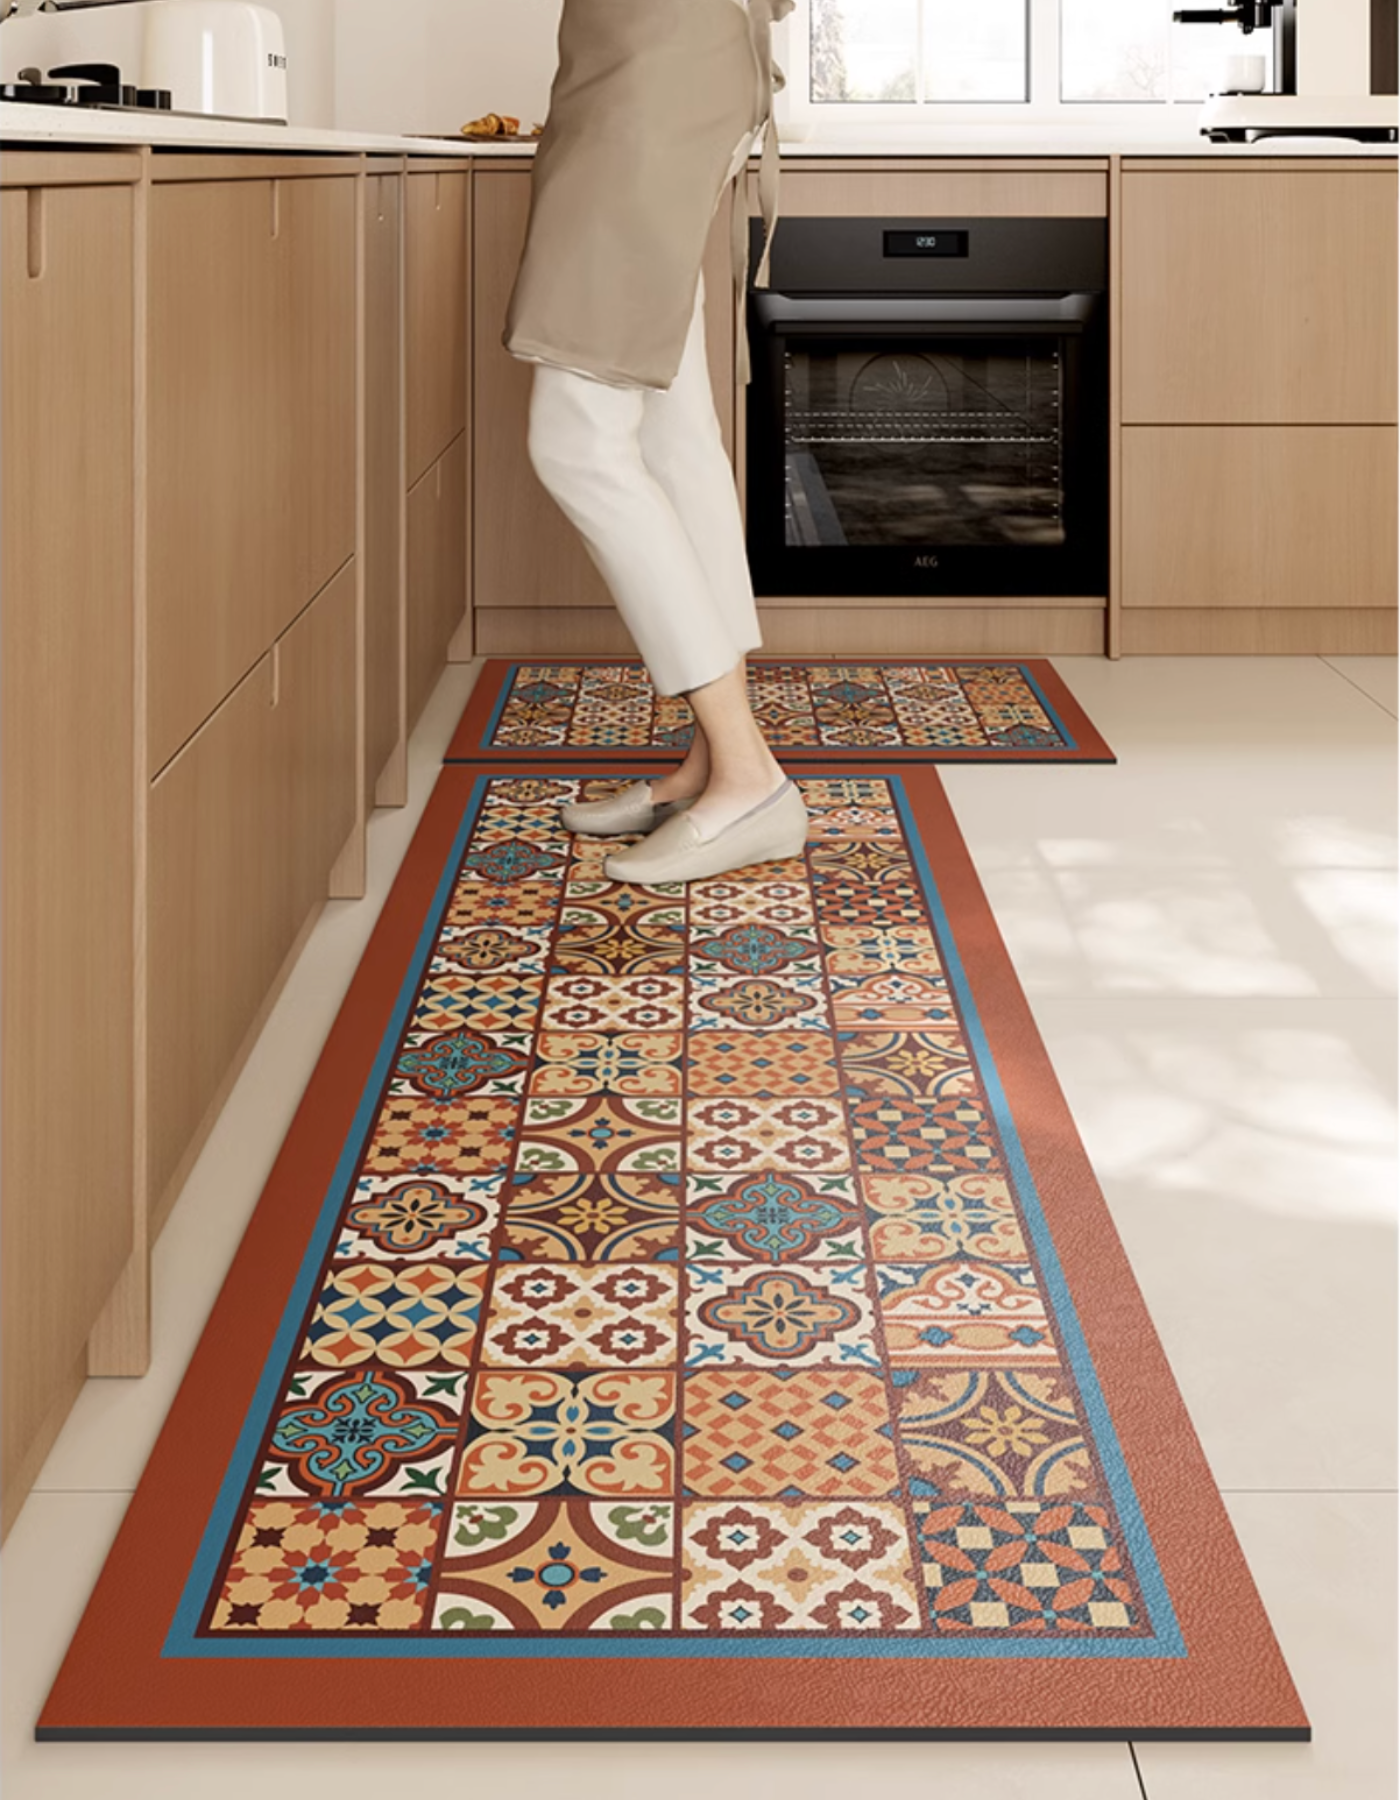 http://maisonmatta.ca/cdn/shop/files/mexican-tiles-kitchen-mat-1.png?v=1700149188